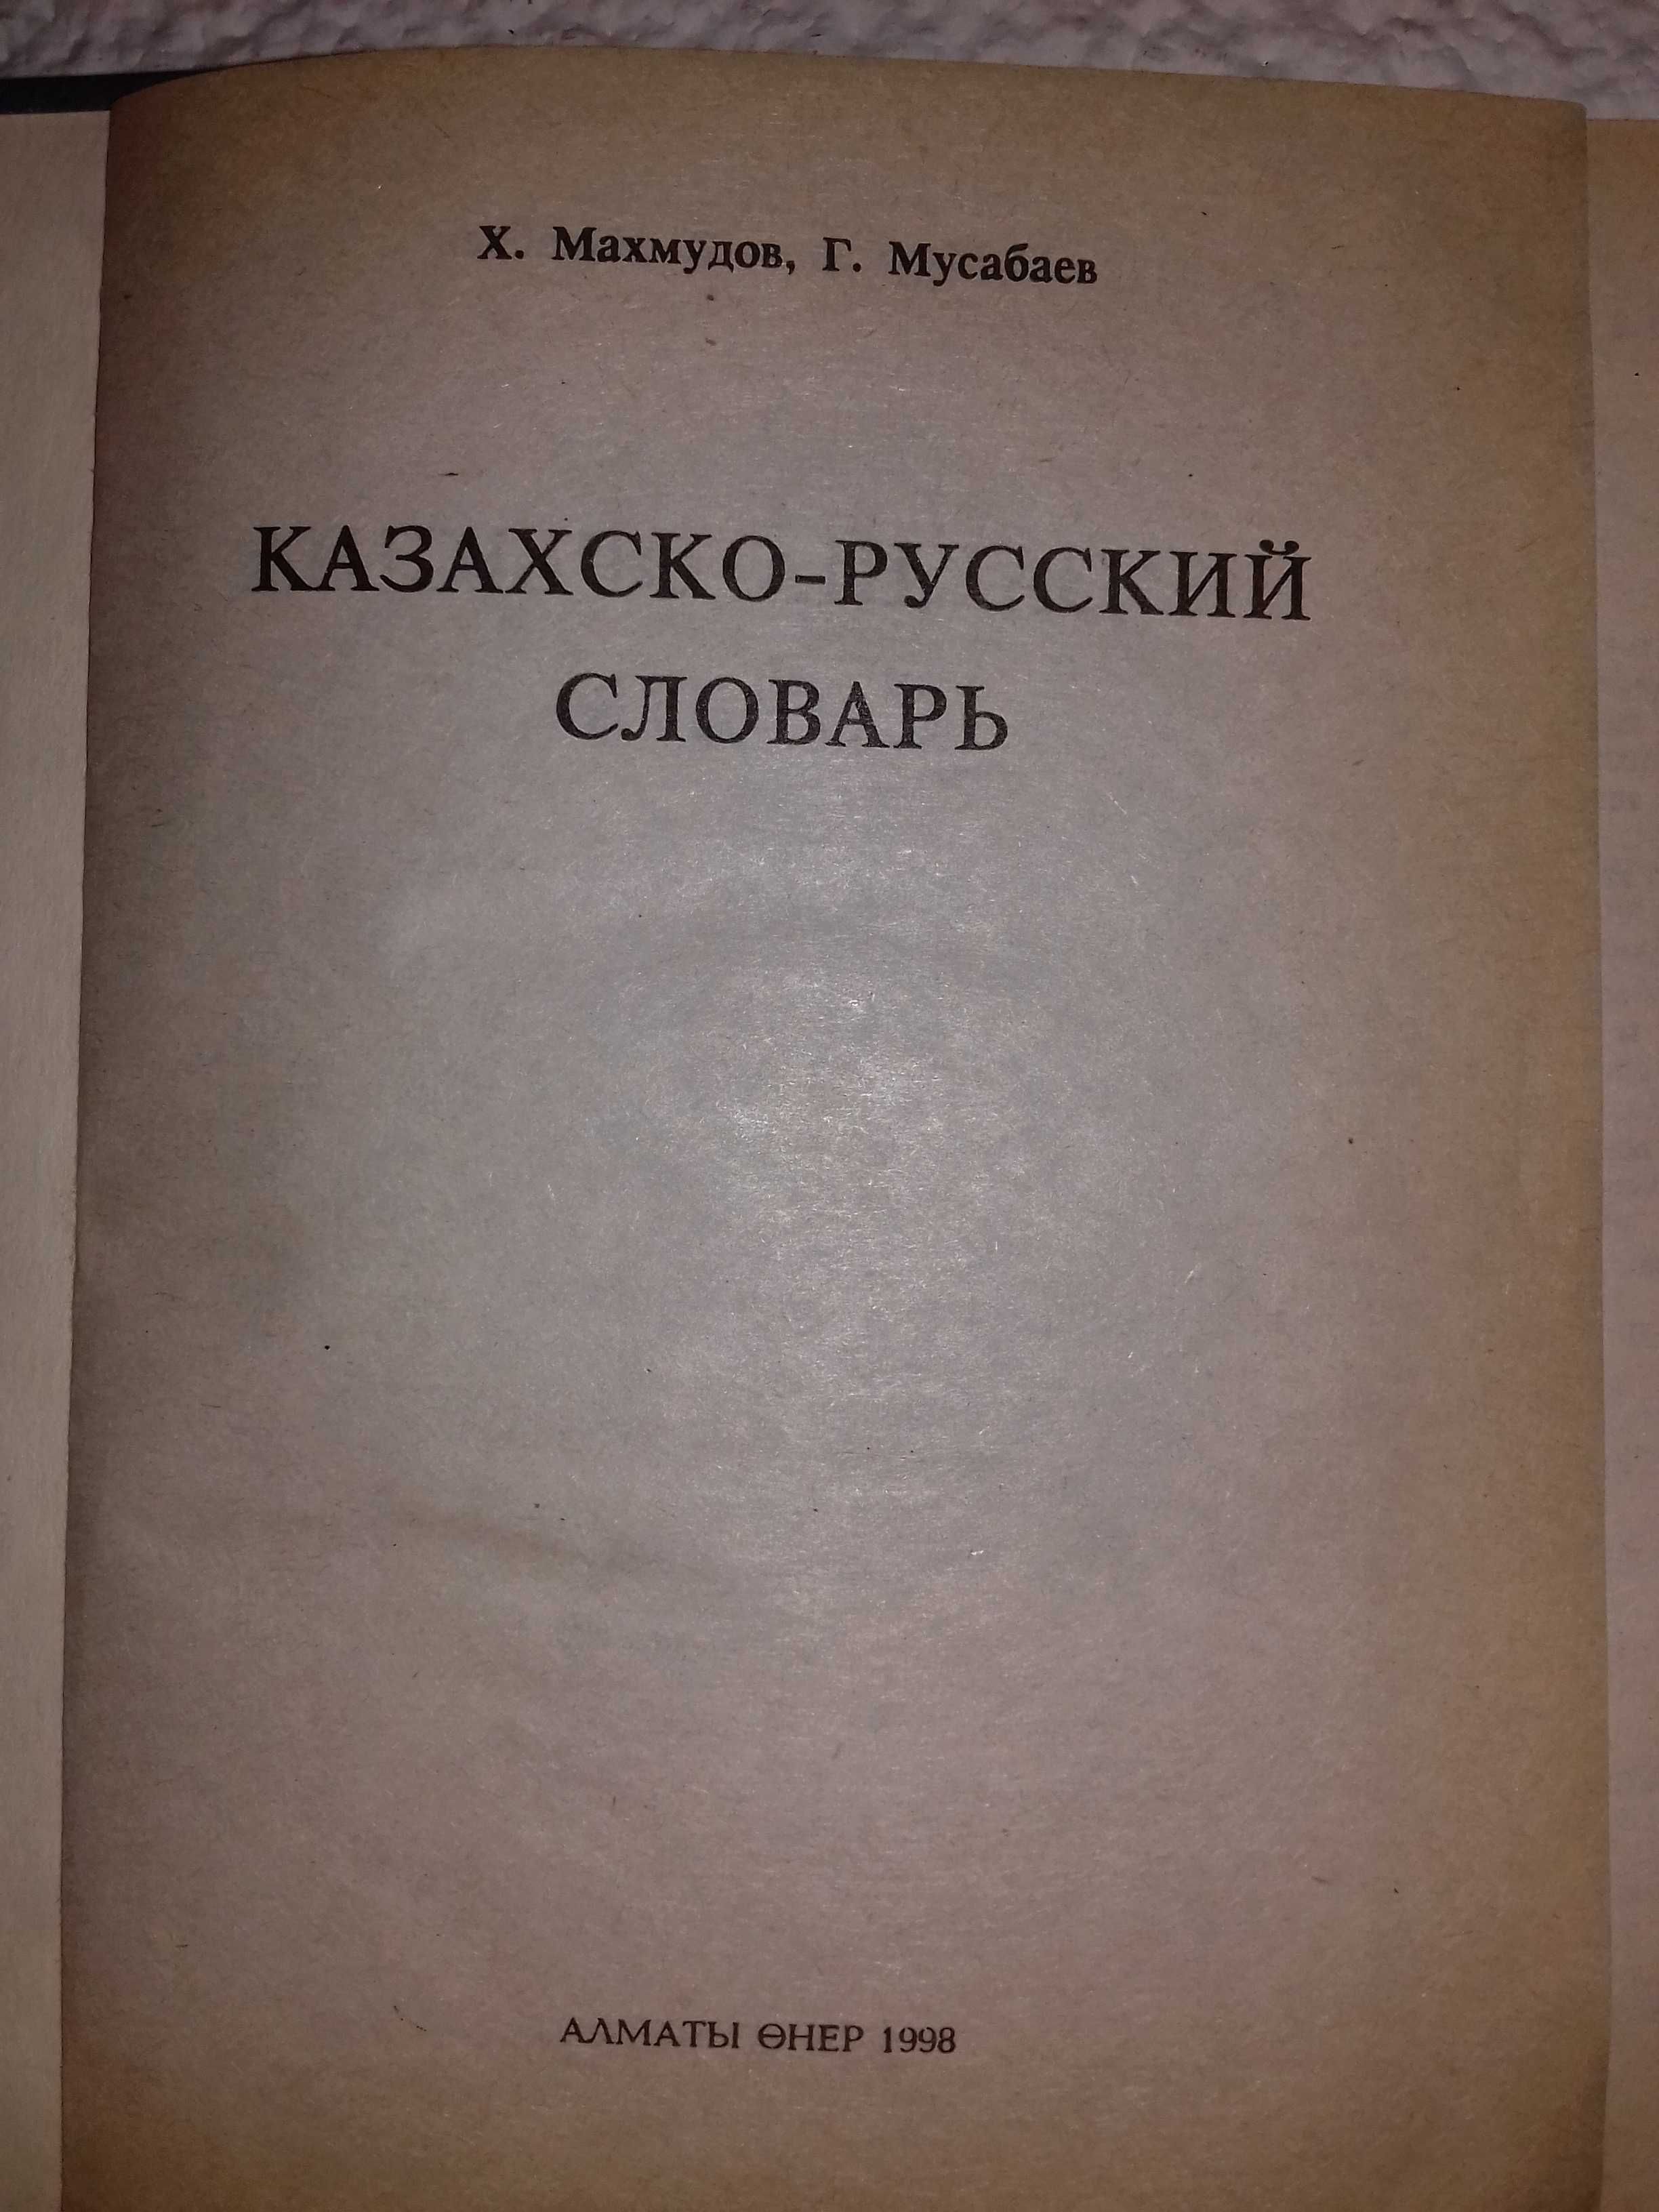 Русско-казахский словарь за 2000 тг. Торг.